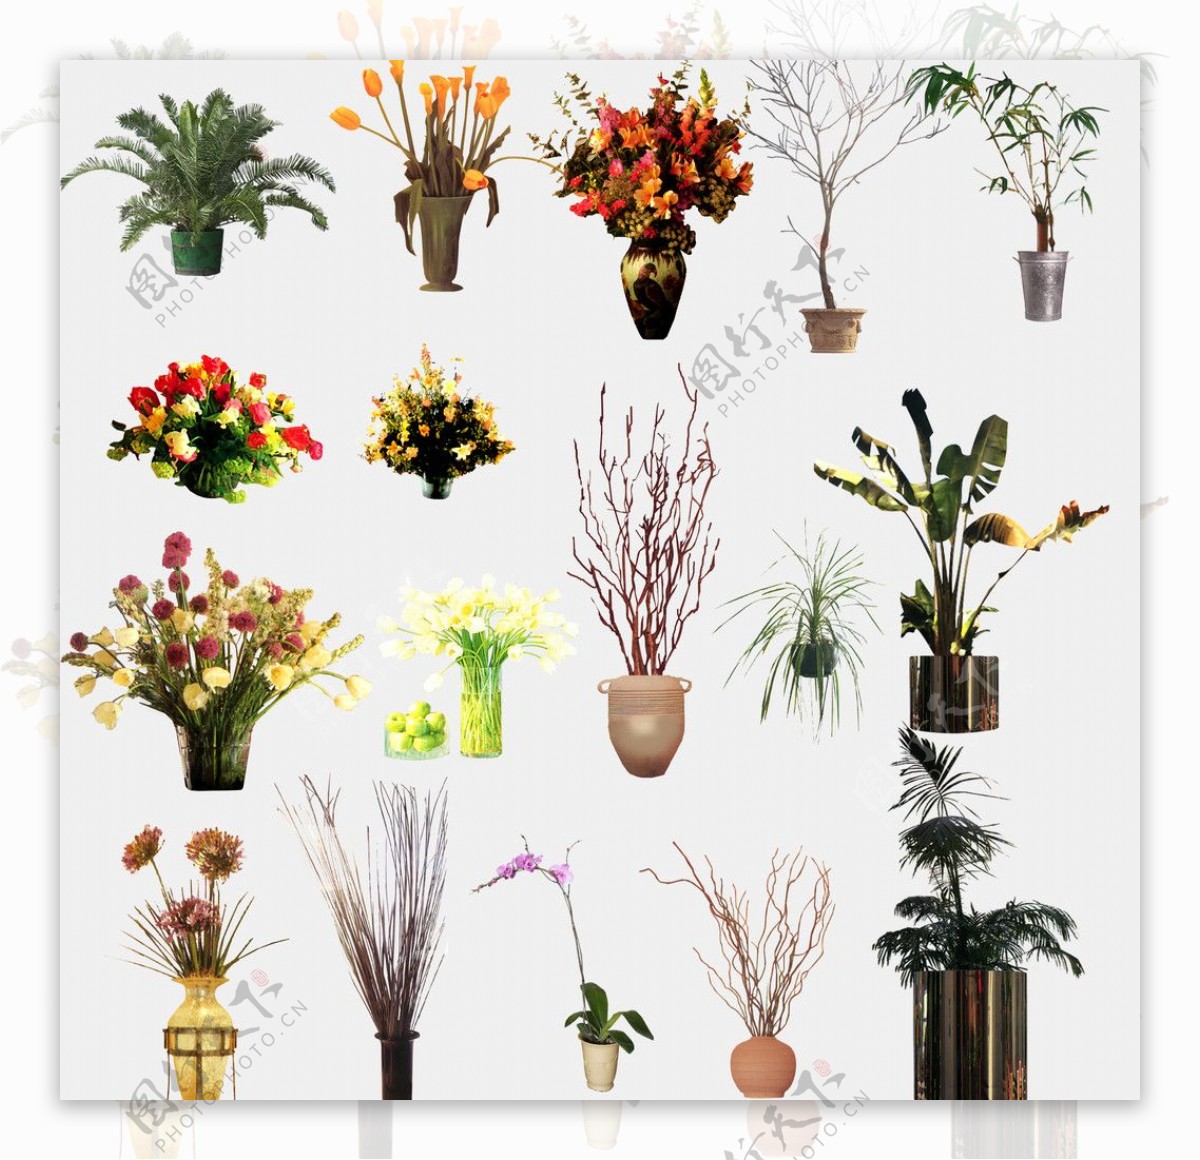 室内植物盆栽图片